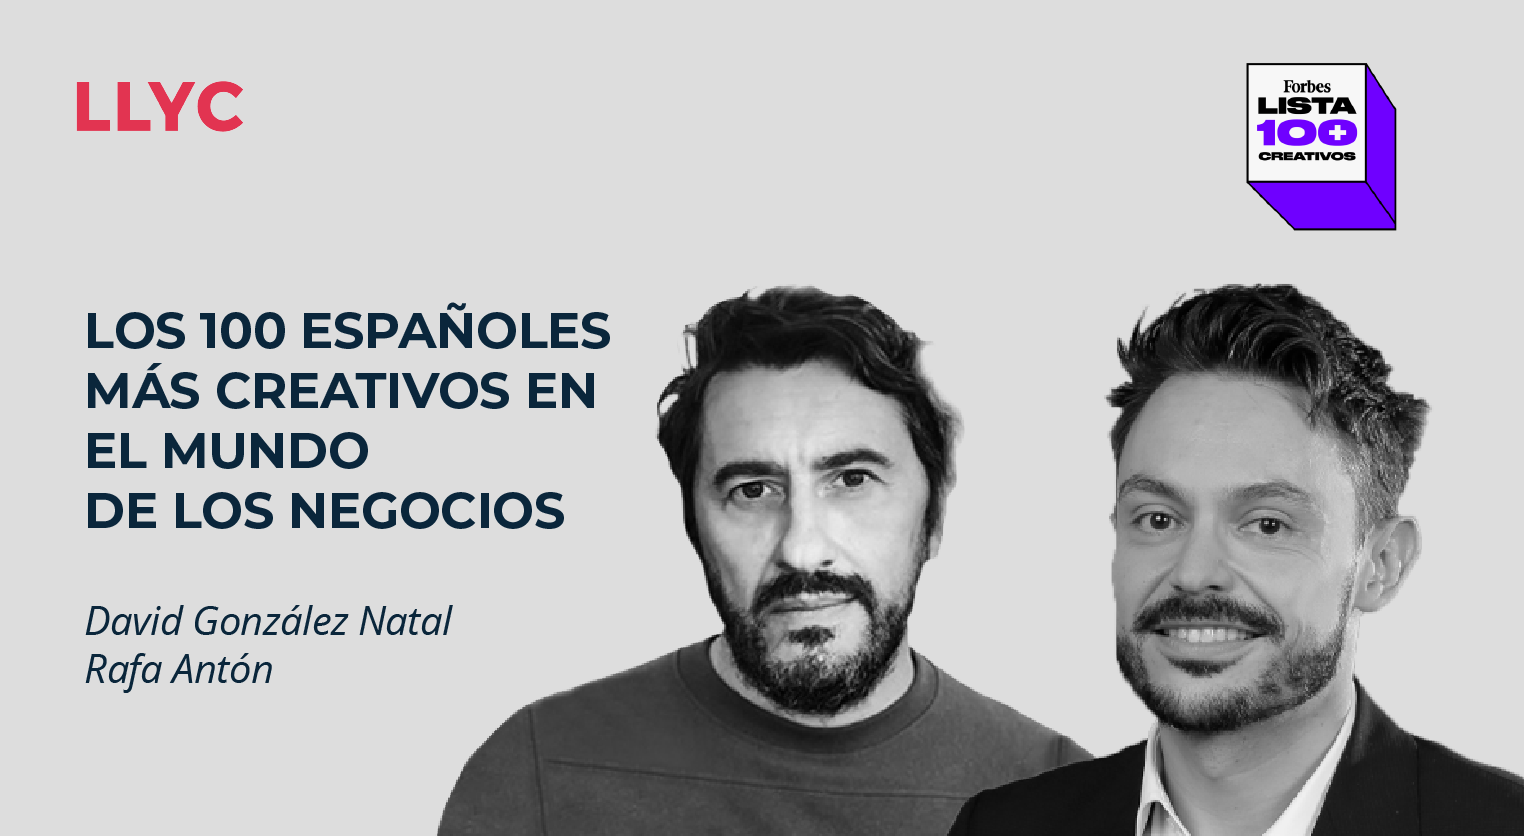 David González Natal y Rafa Antón, en la lista de los 100 españoles más creativos en el mundo de los negocios de la revista Forbes